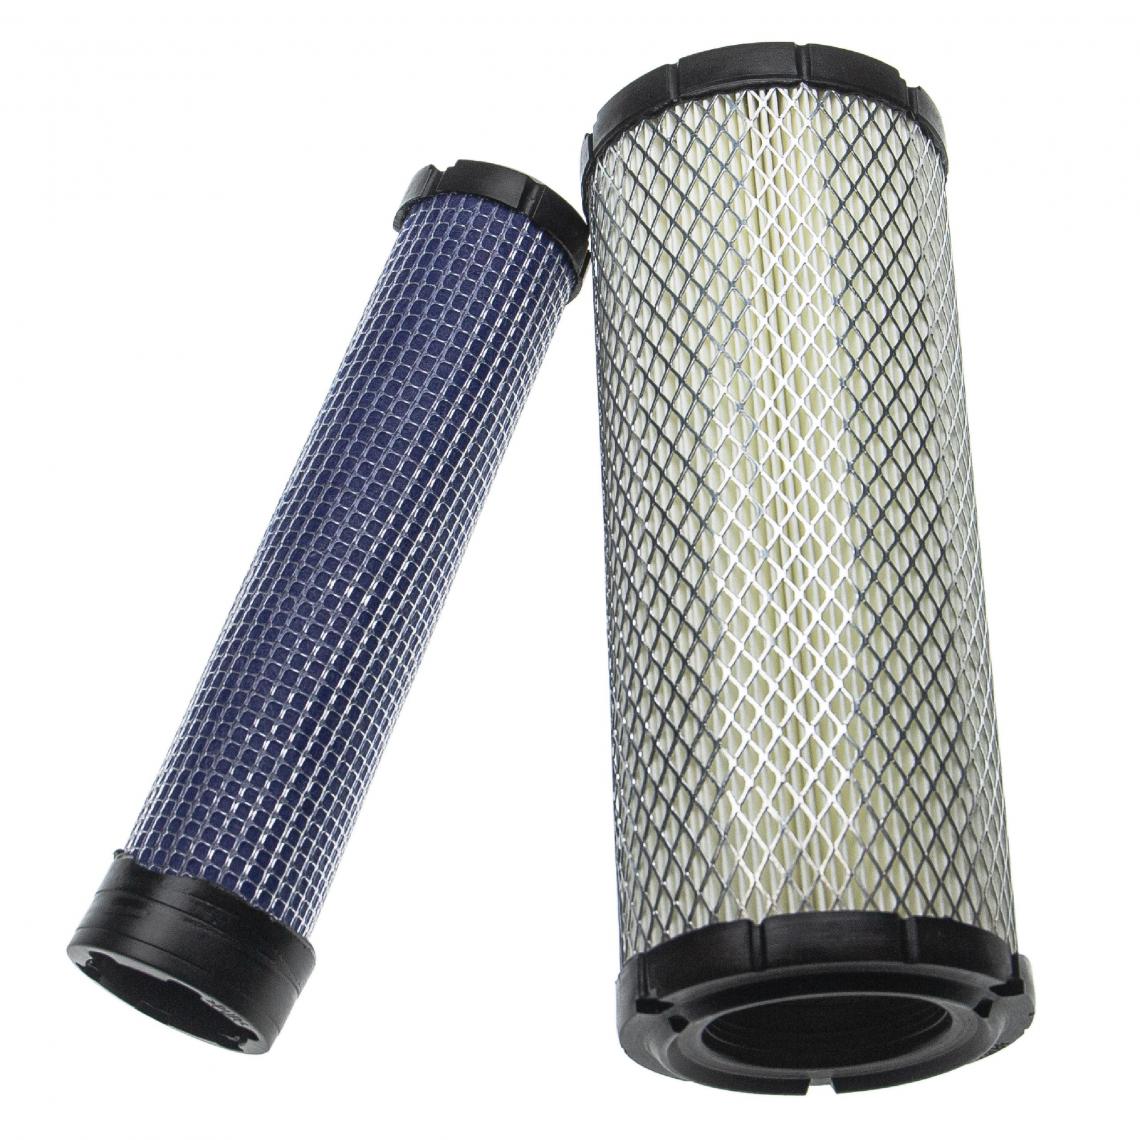 Vhbw - vhbw Lot de filtres compatible avec Yanmar VIO45-5, VIO50-2, VIO50-2A, VIO50-3 engin de chantier; 1x filtre interne, 1x filtre extérieur - Autre appareil de mesure